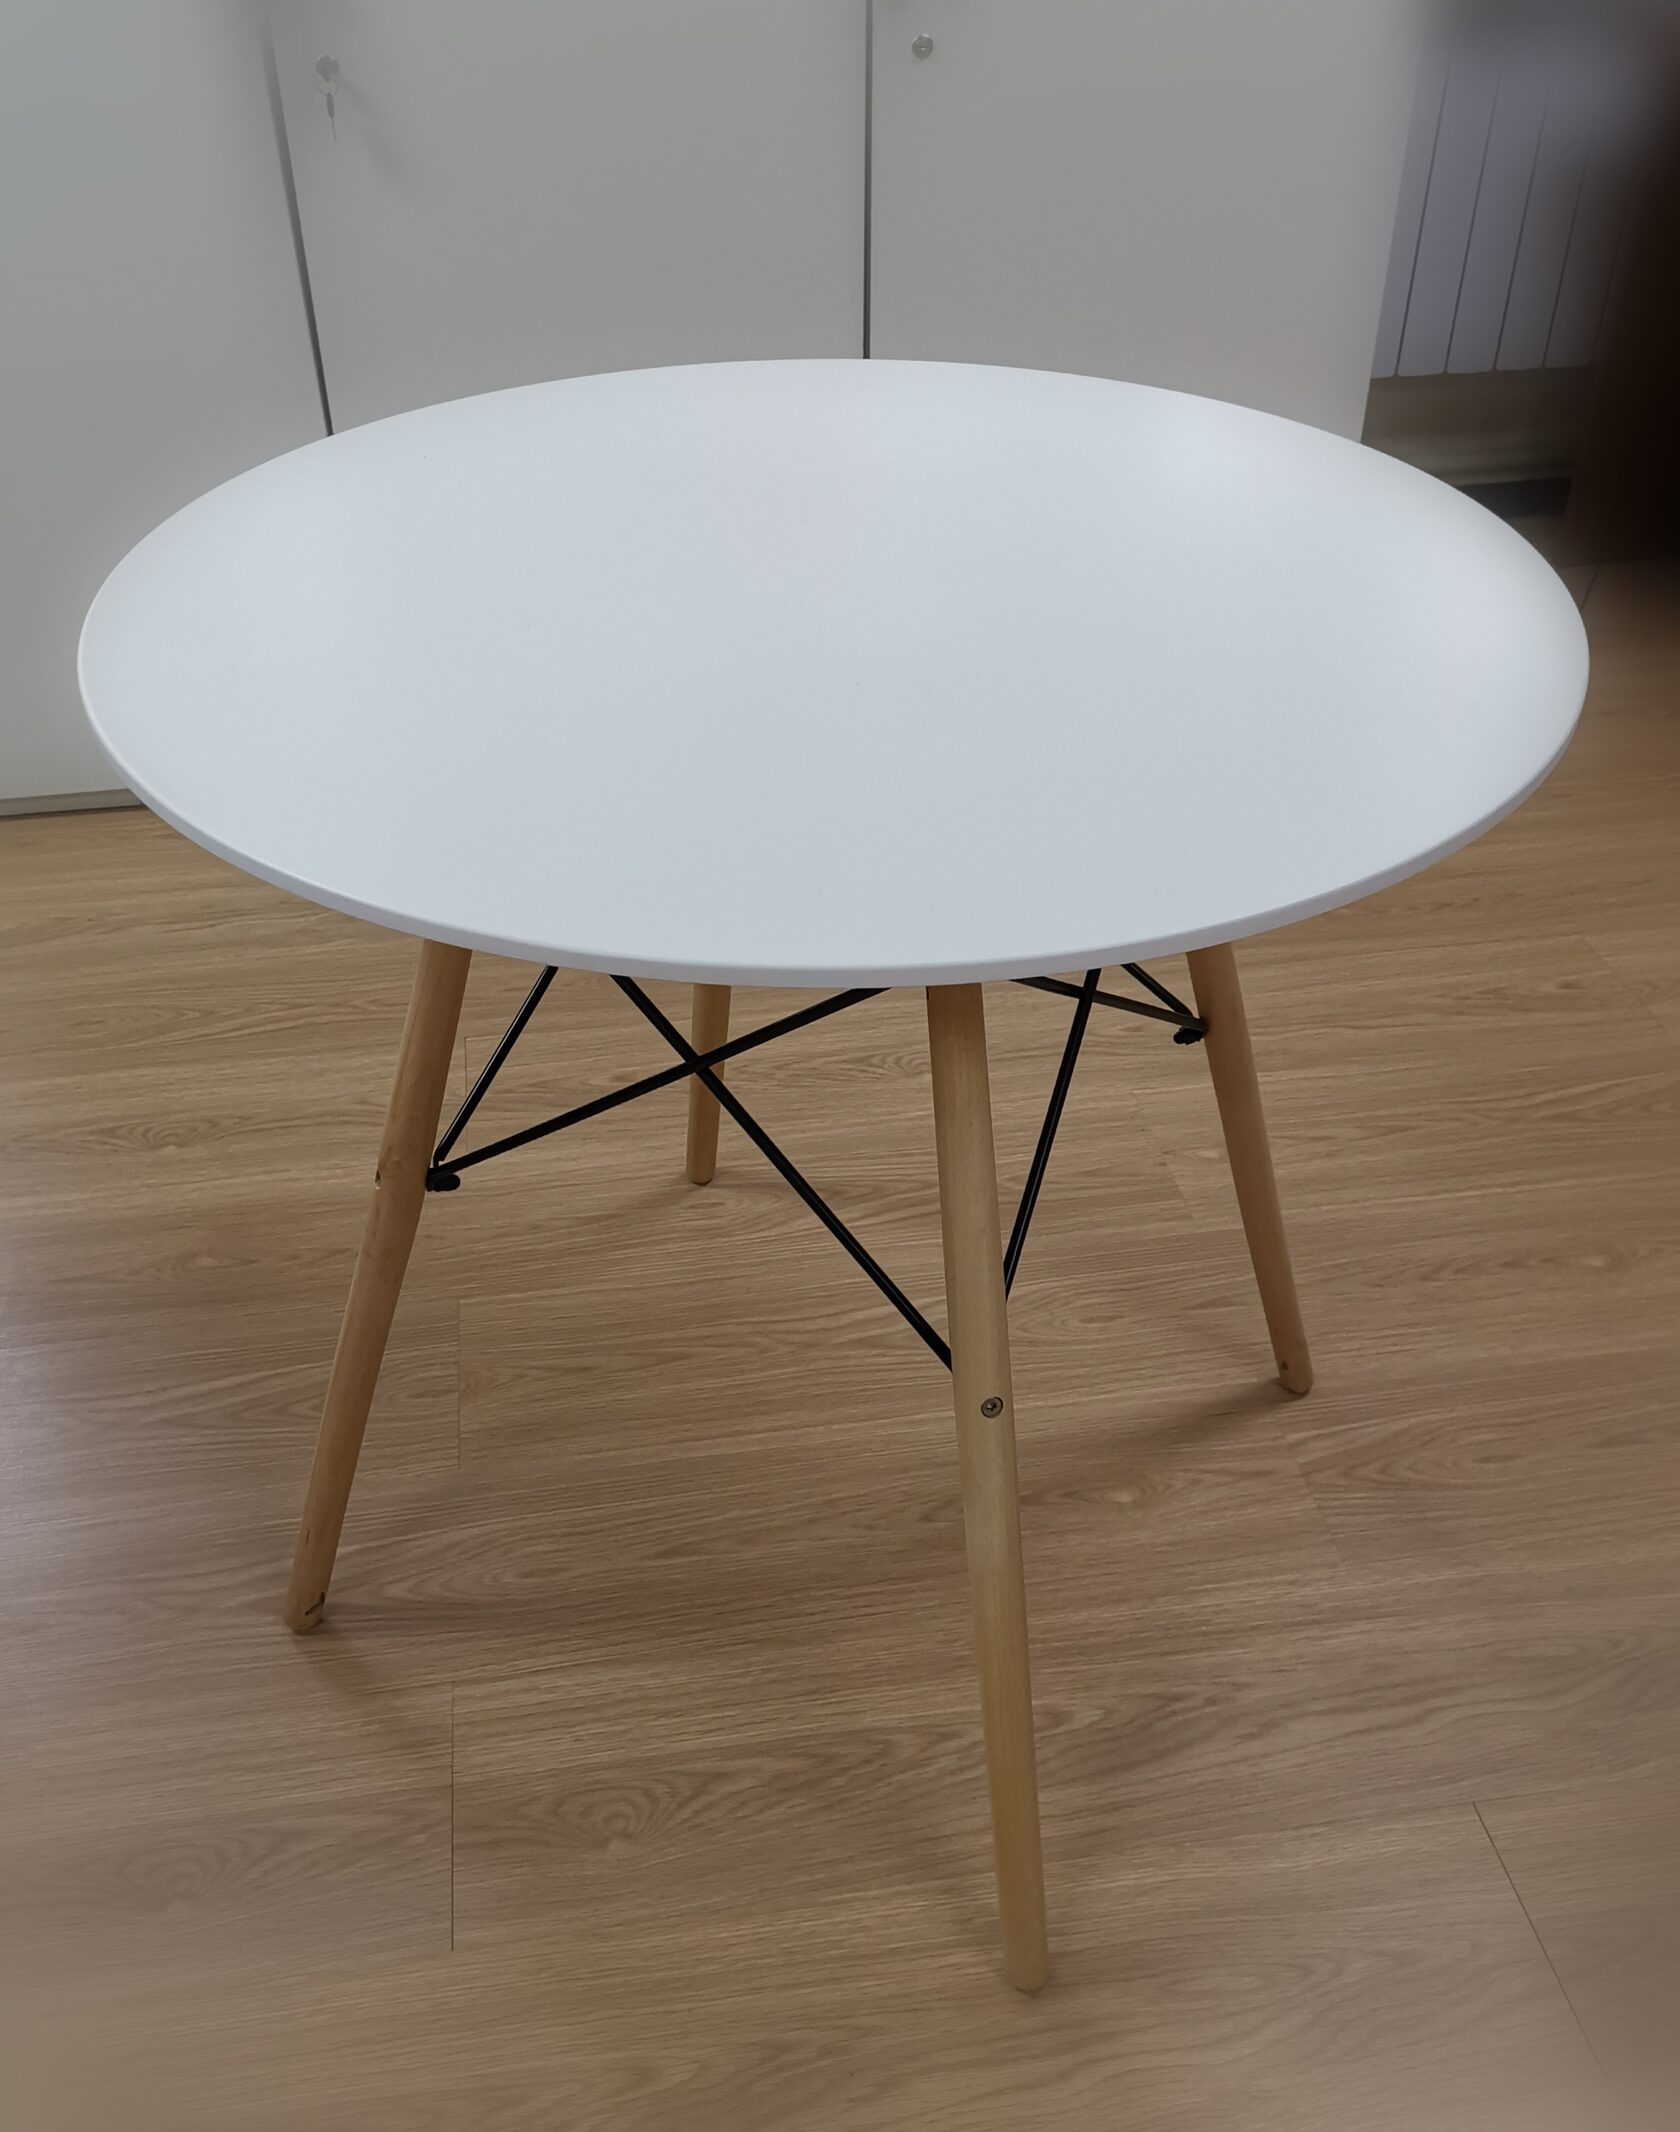 деревянный круглый стол 80 см